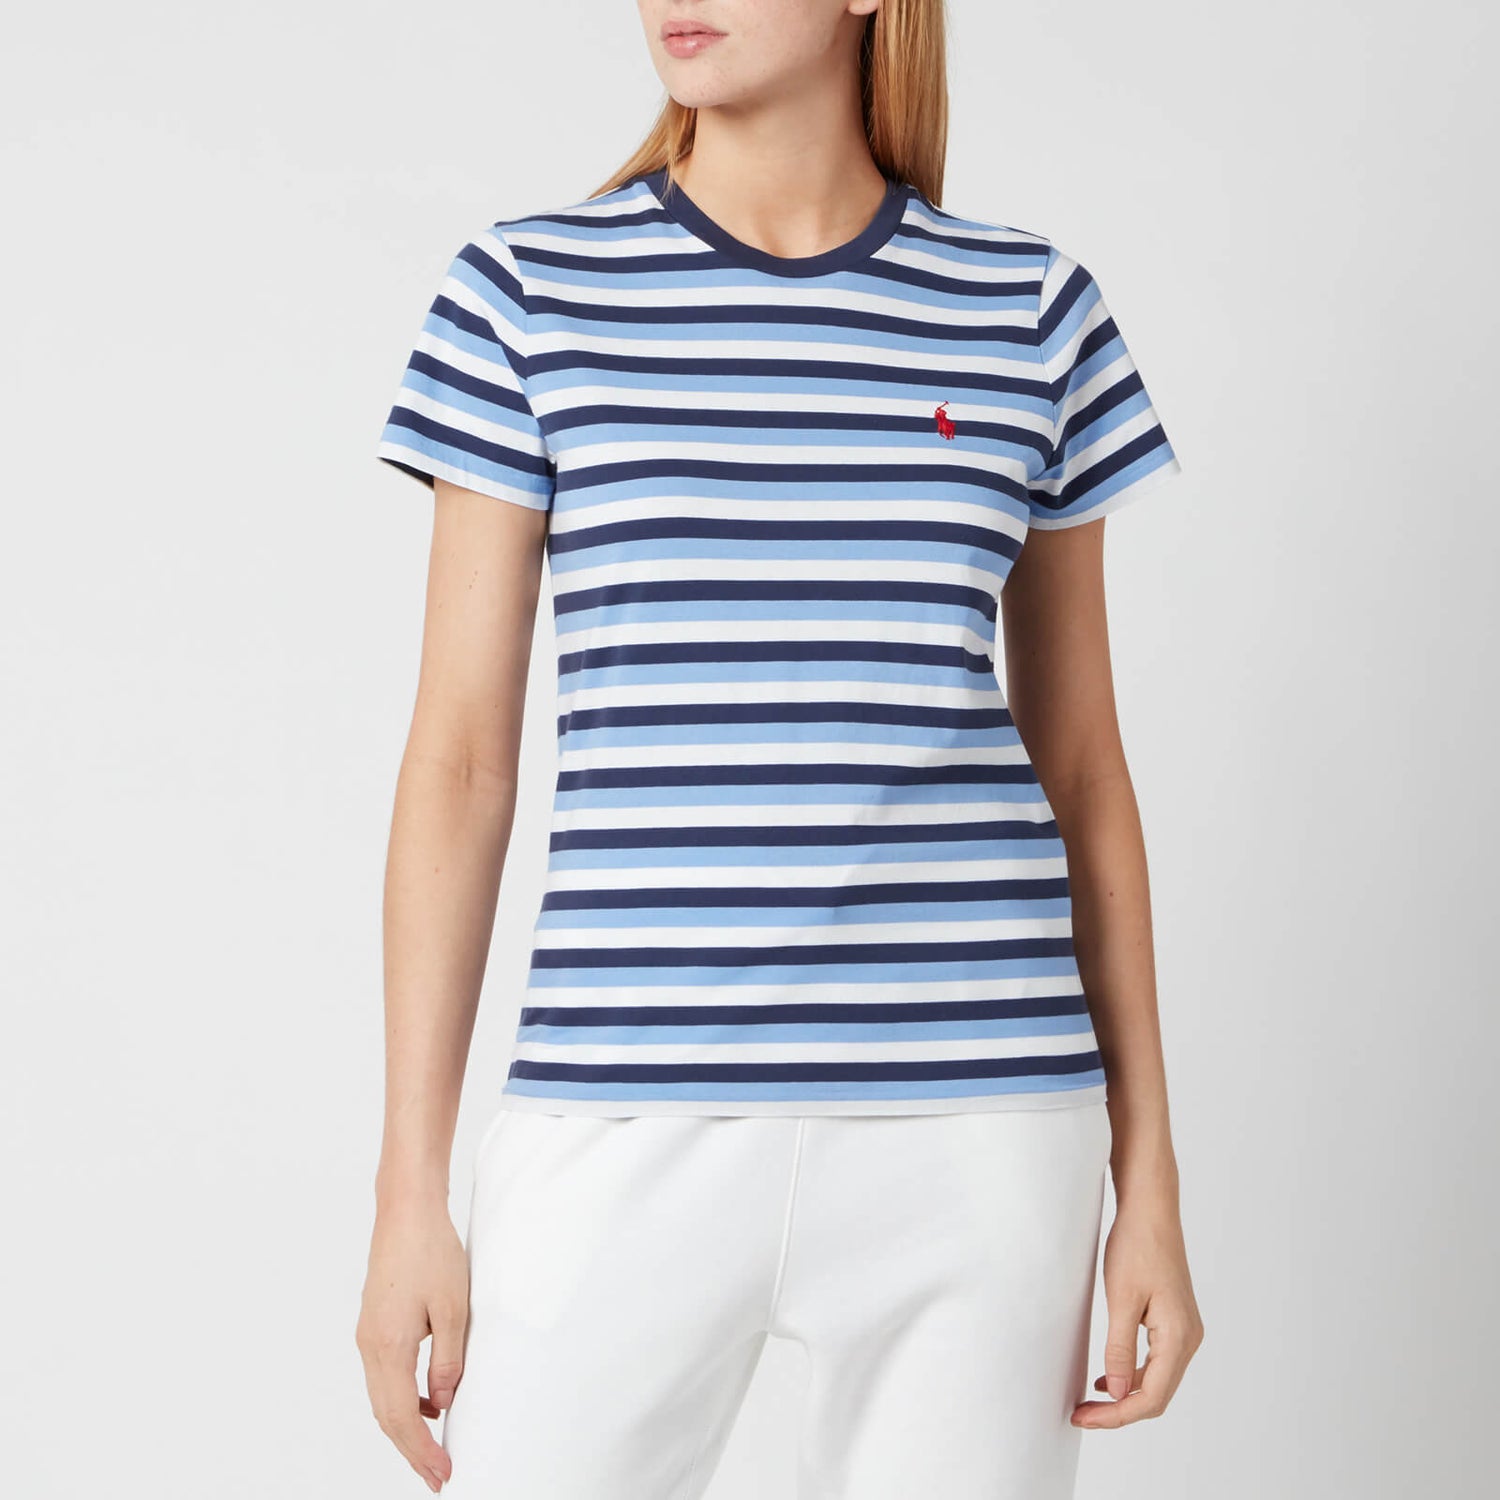 Polo Ralph Lauren Women's Stripe Short Sleeve T-Shirt - Blue/Navy/White